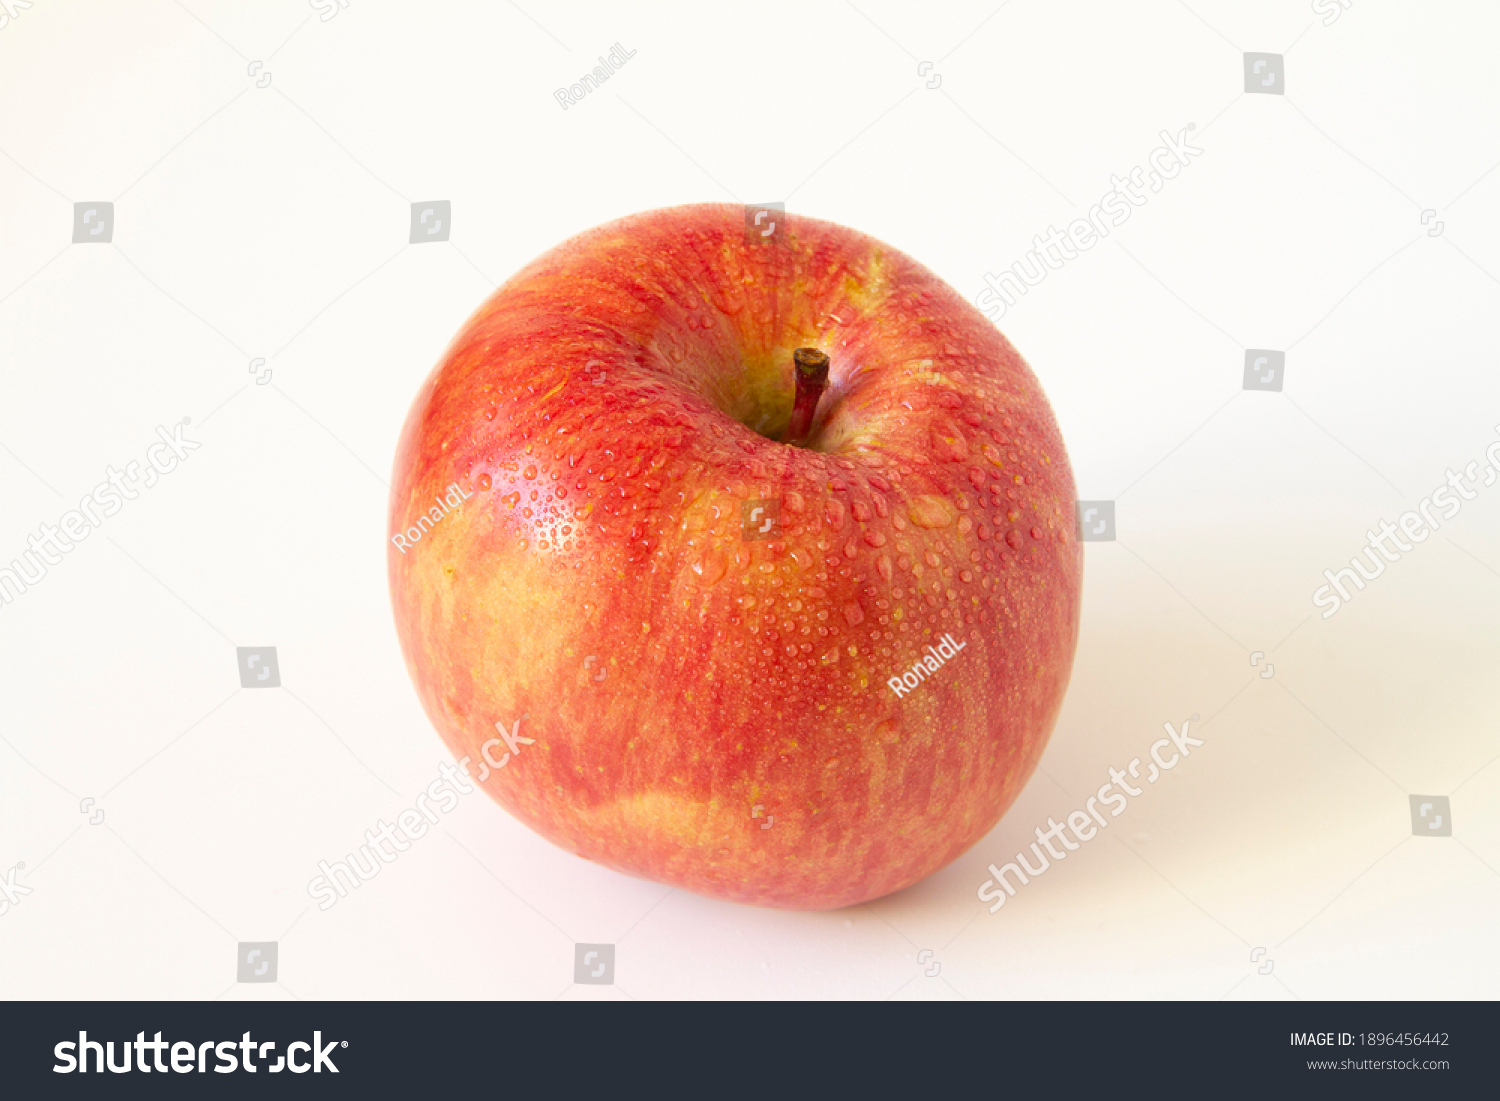 Honeycrisp apple close up. White background. #1896456442